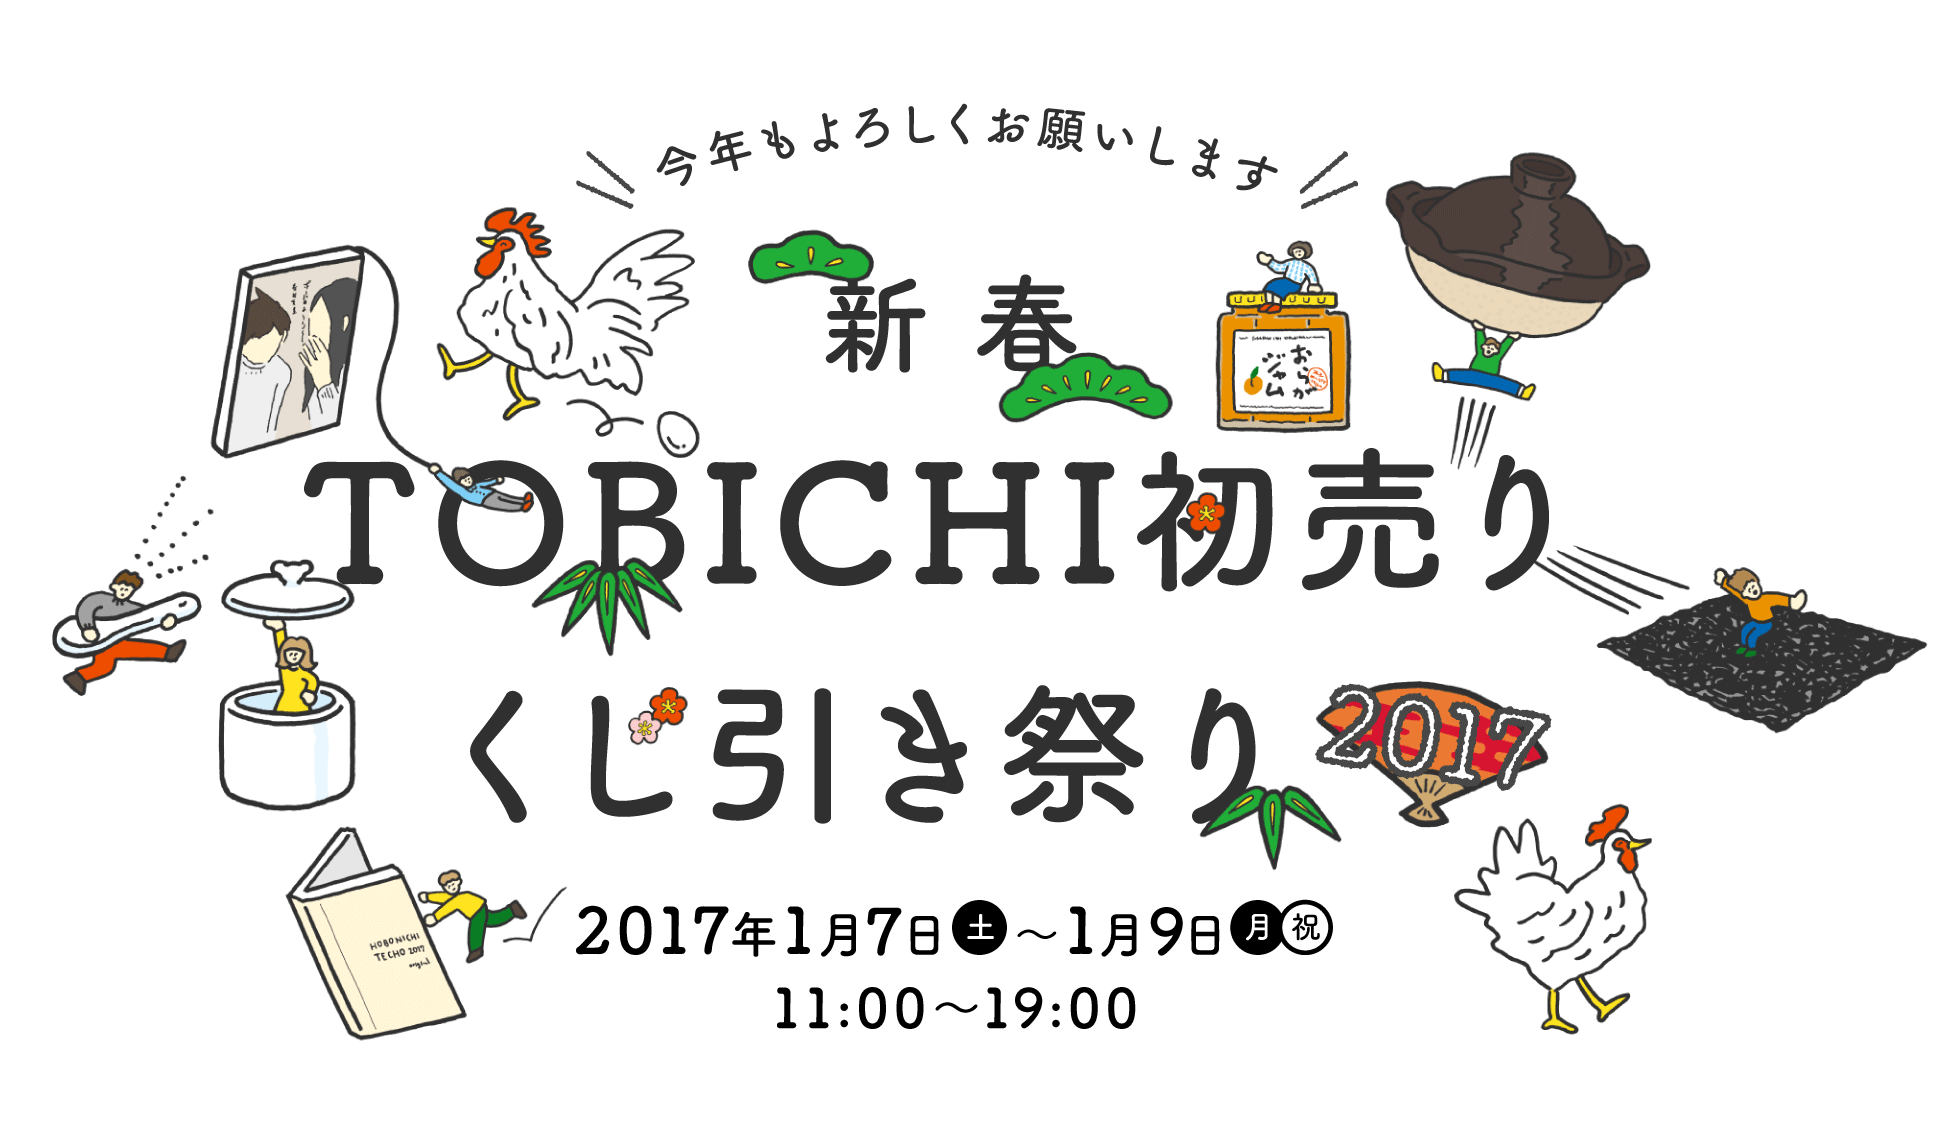 
		今年もよろしくお願いします
		新春
		TOBICHI初売り
		くじ引き祭り2017

		2017年１月７日（土）～１月９日（月・祝）11:00～19:00